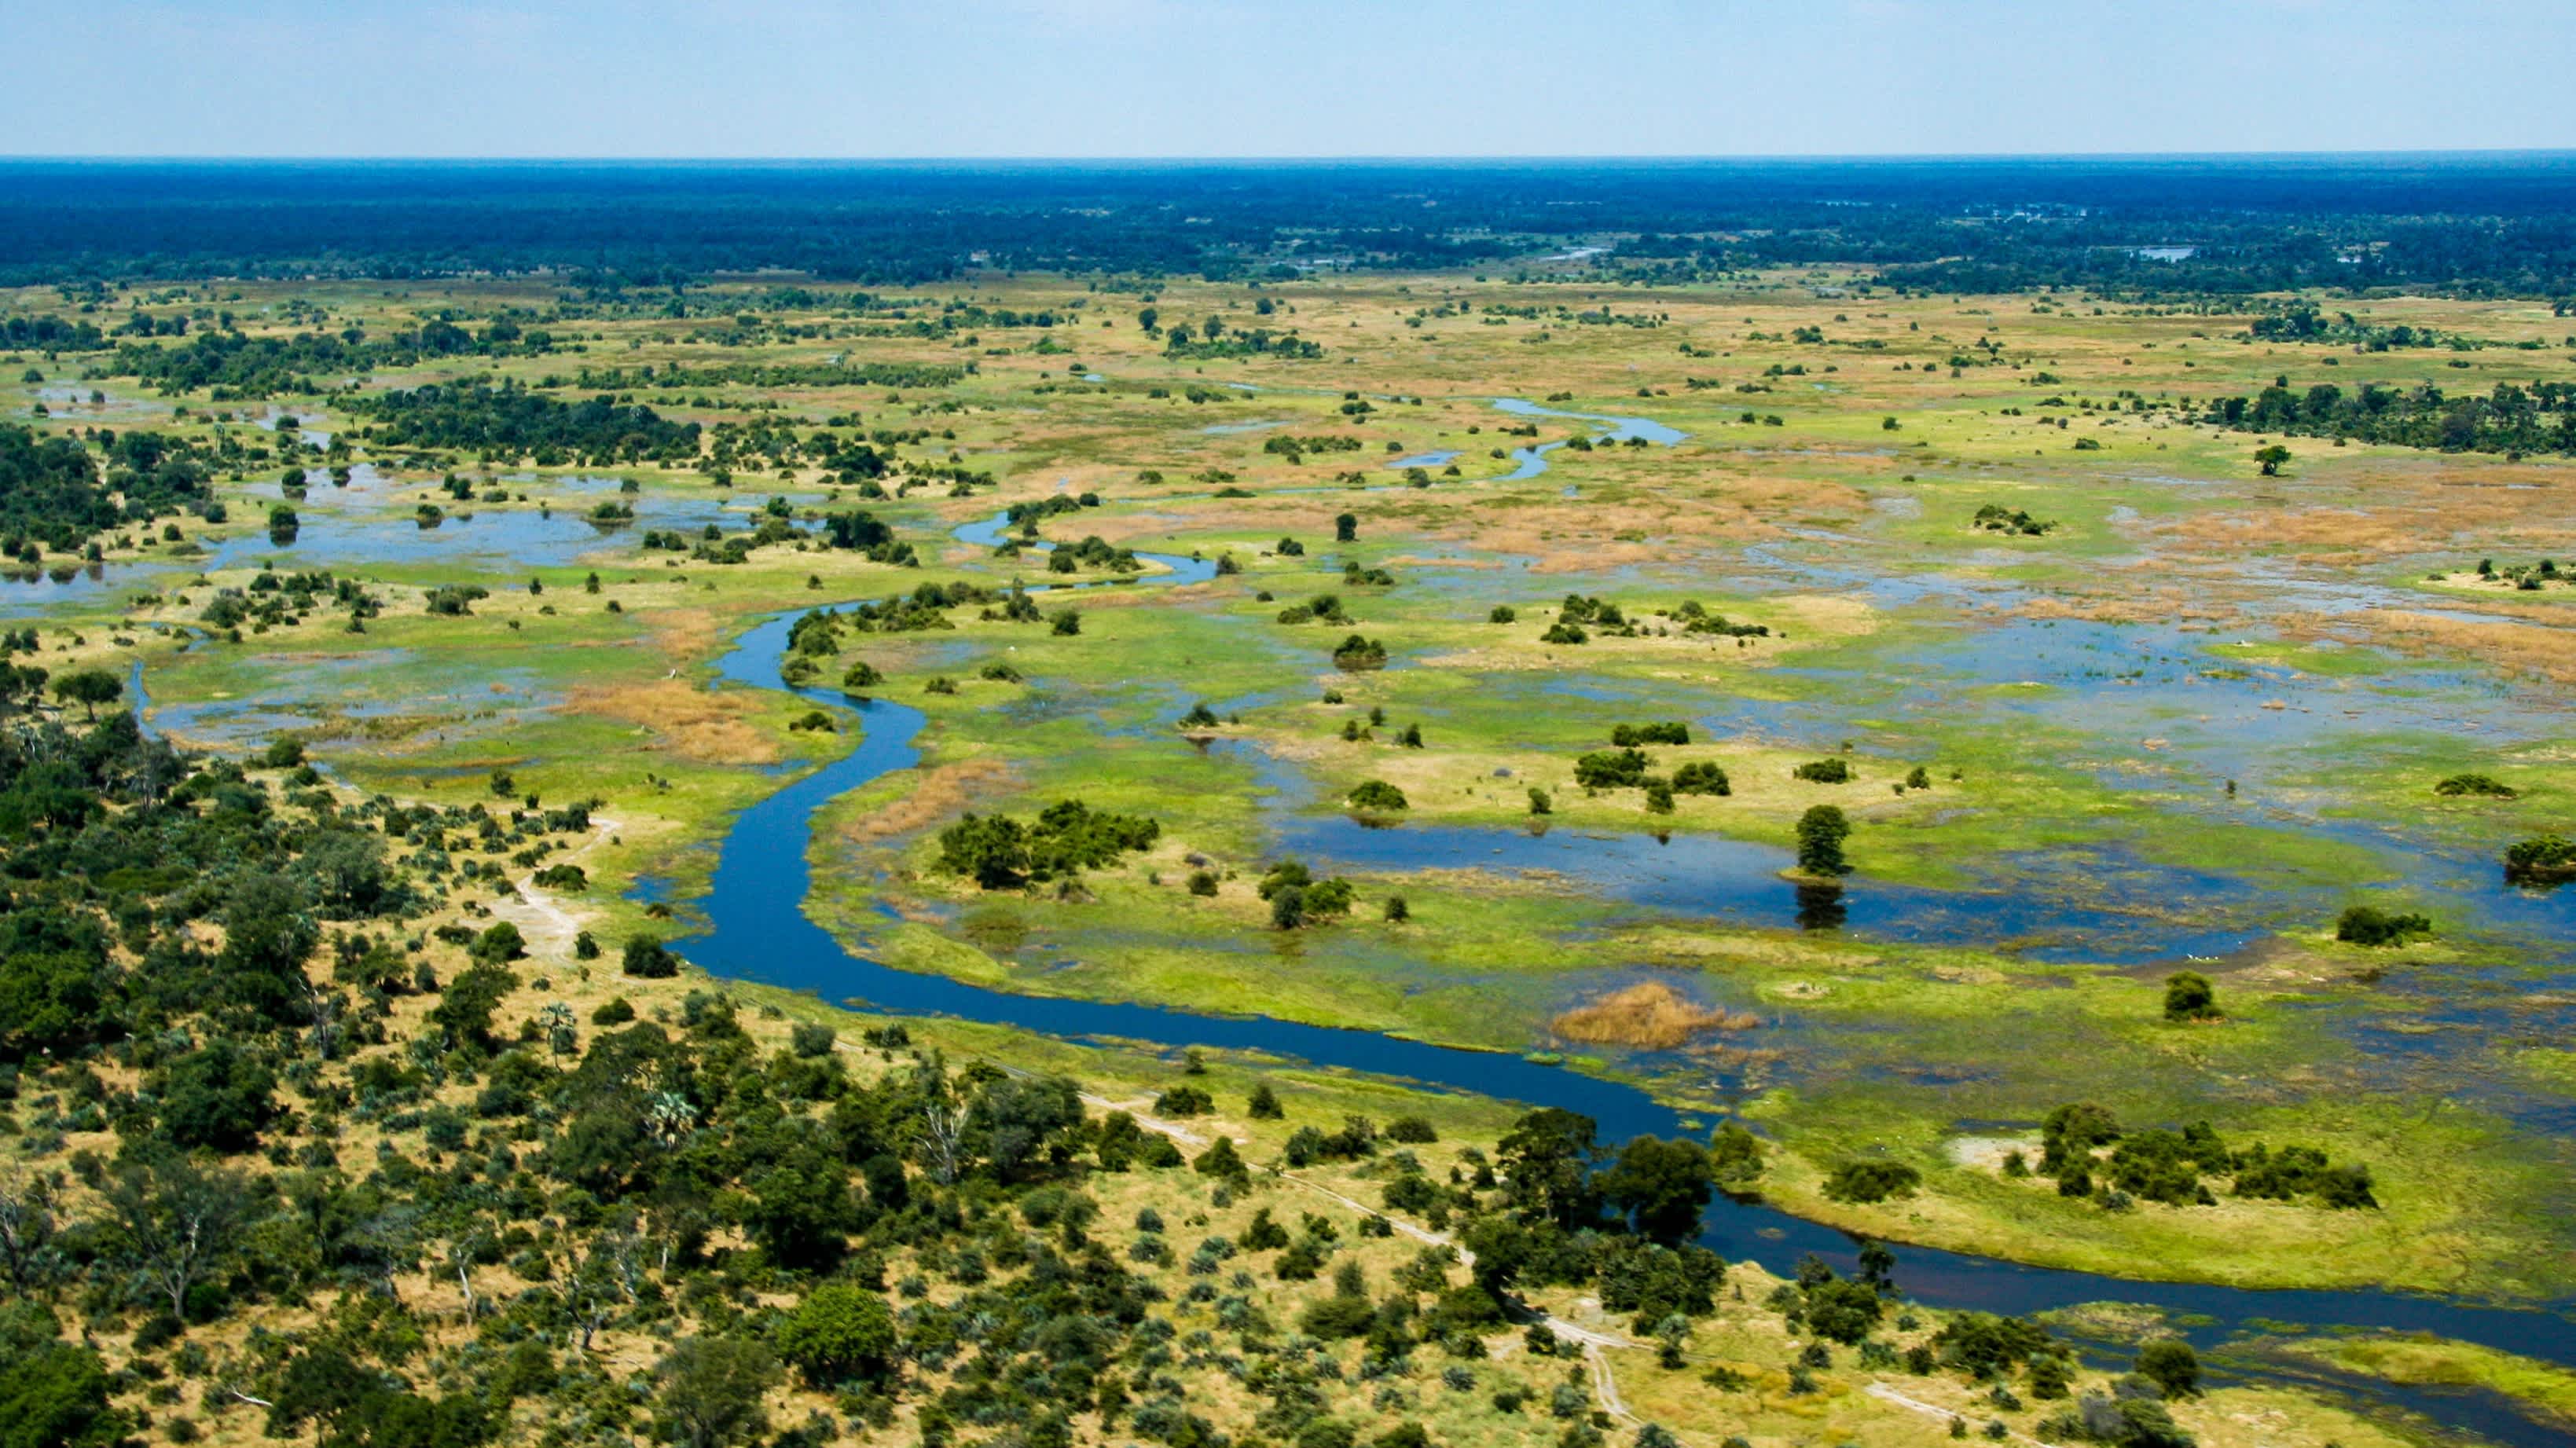 Survolez le delta de l'Okavango pendant votre voyage sur mesure au Botswana